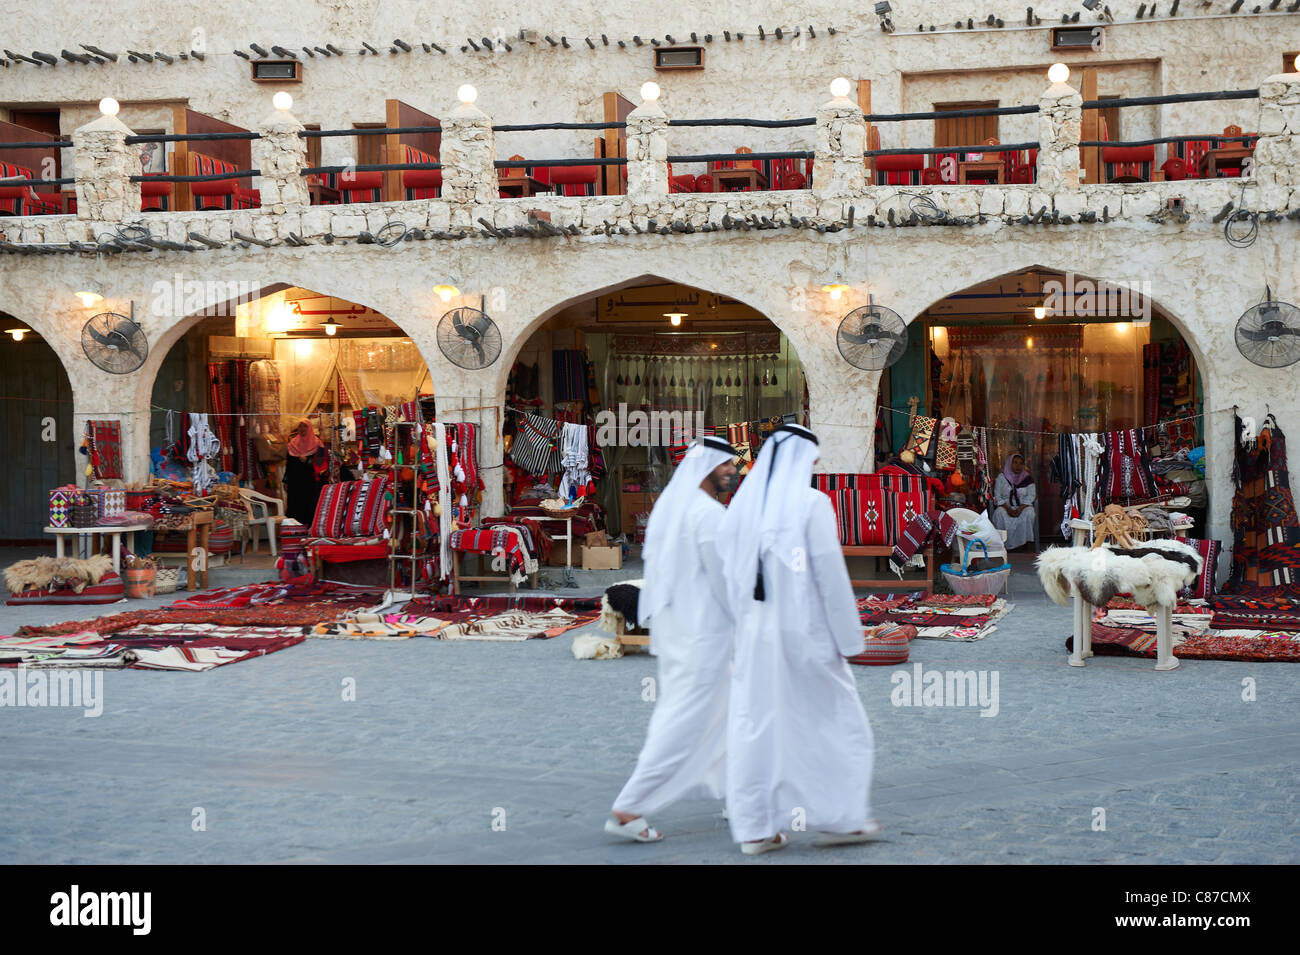 souq waqif doha qatar middle east Stock Photo